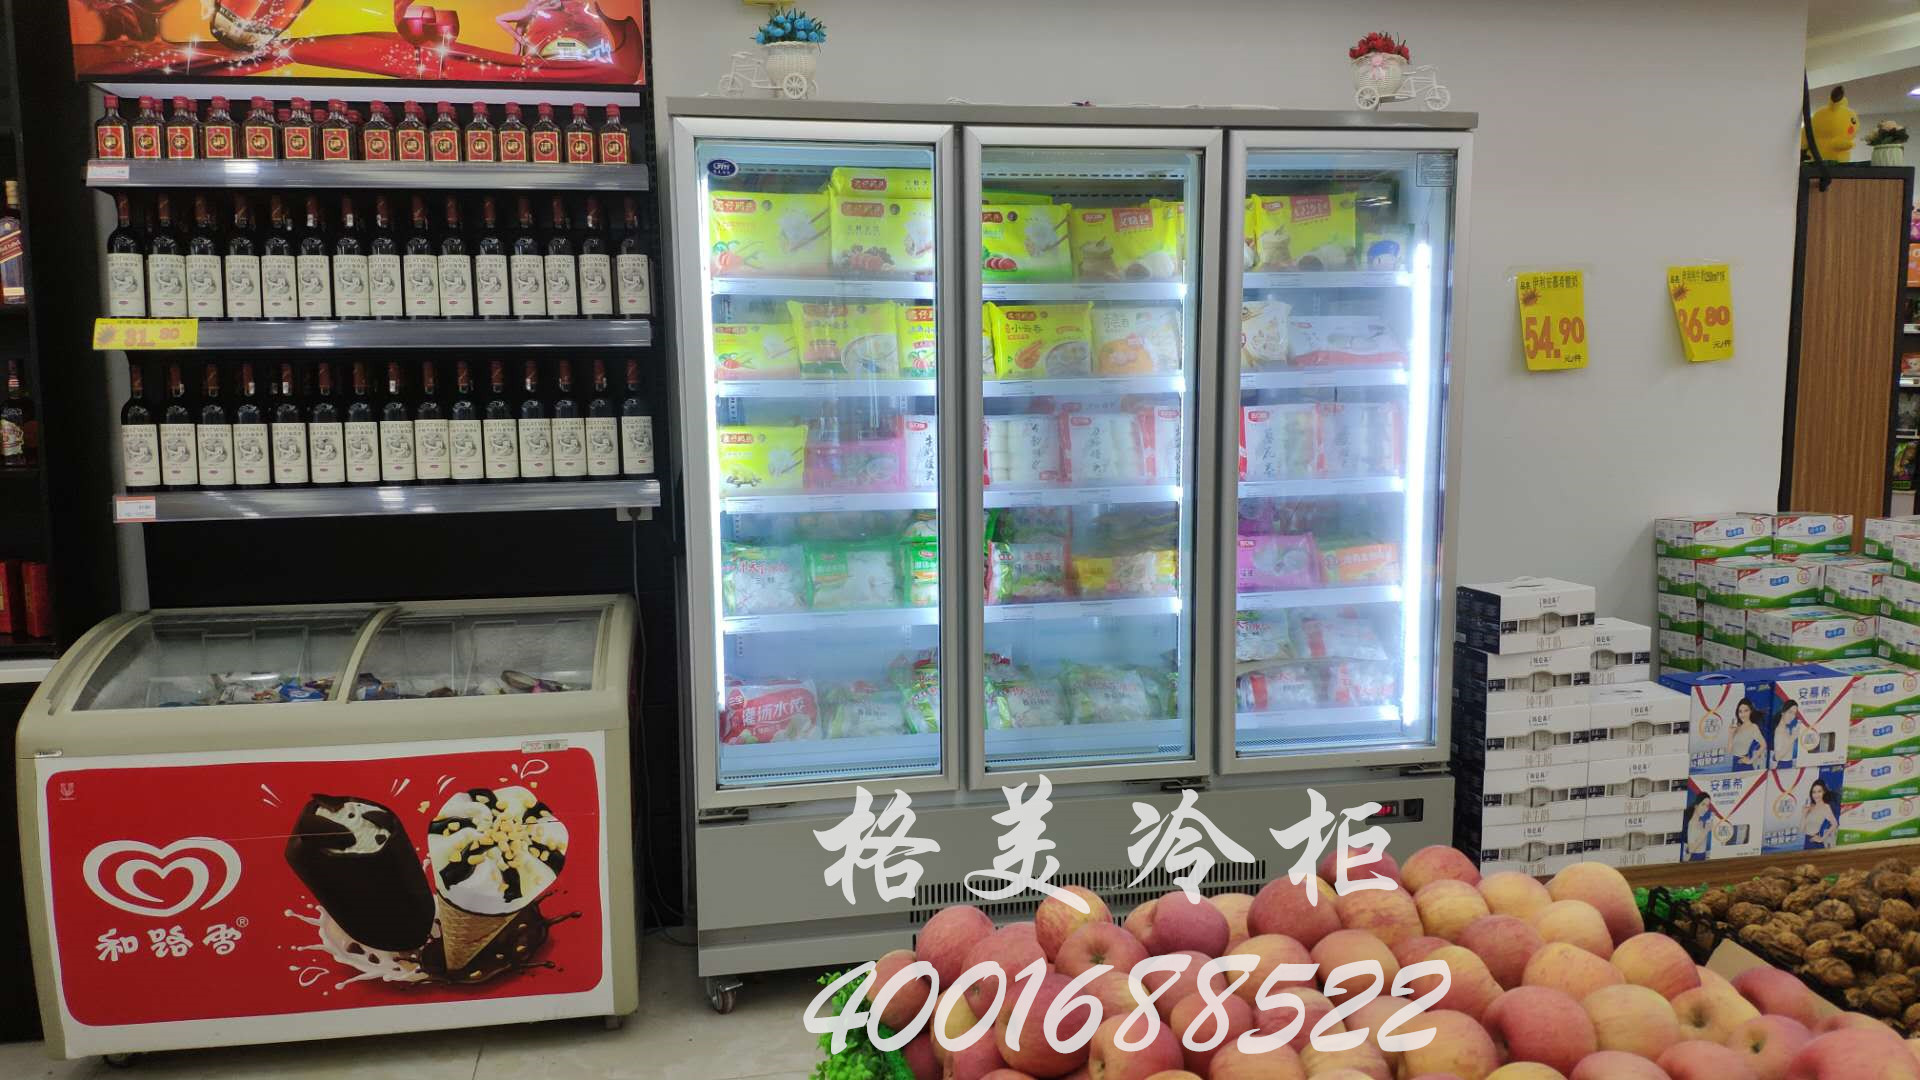 超市冷柜的水果蔬菜保鲜设备